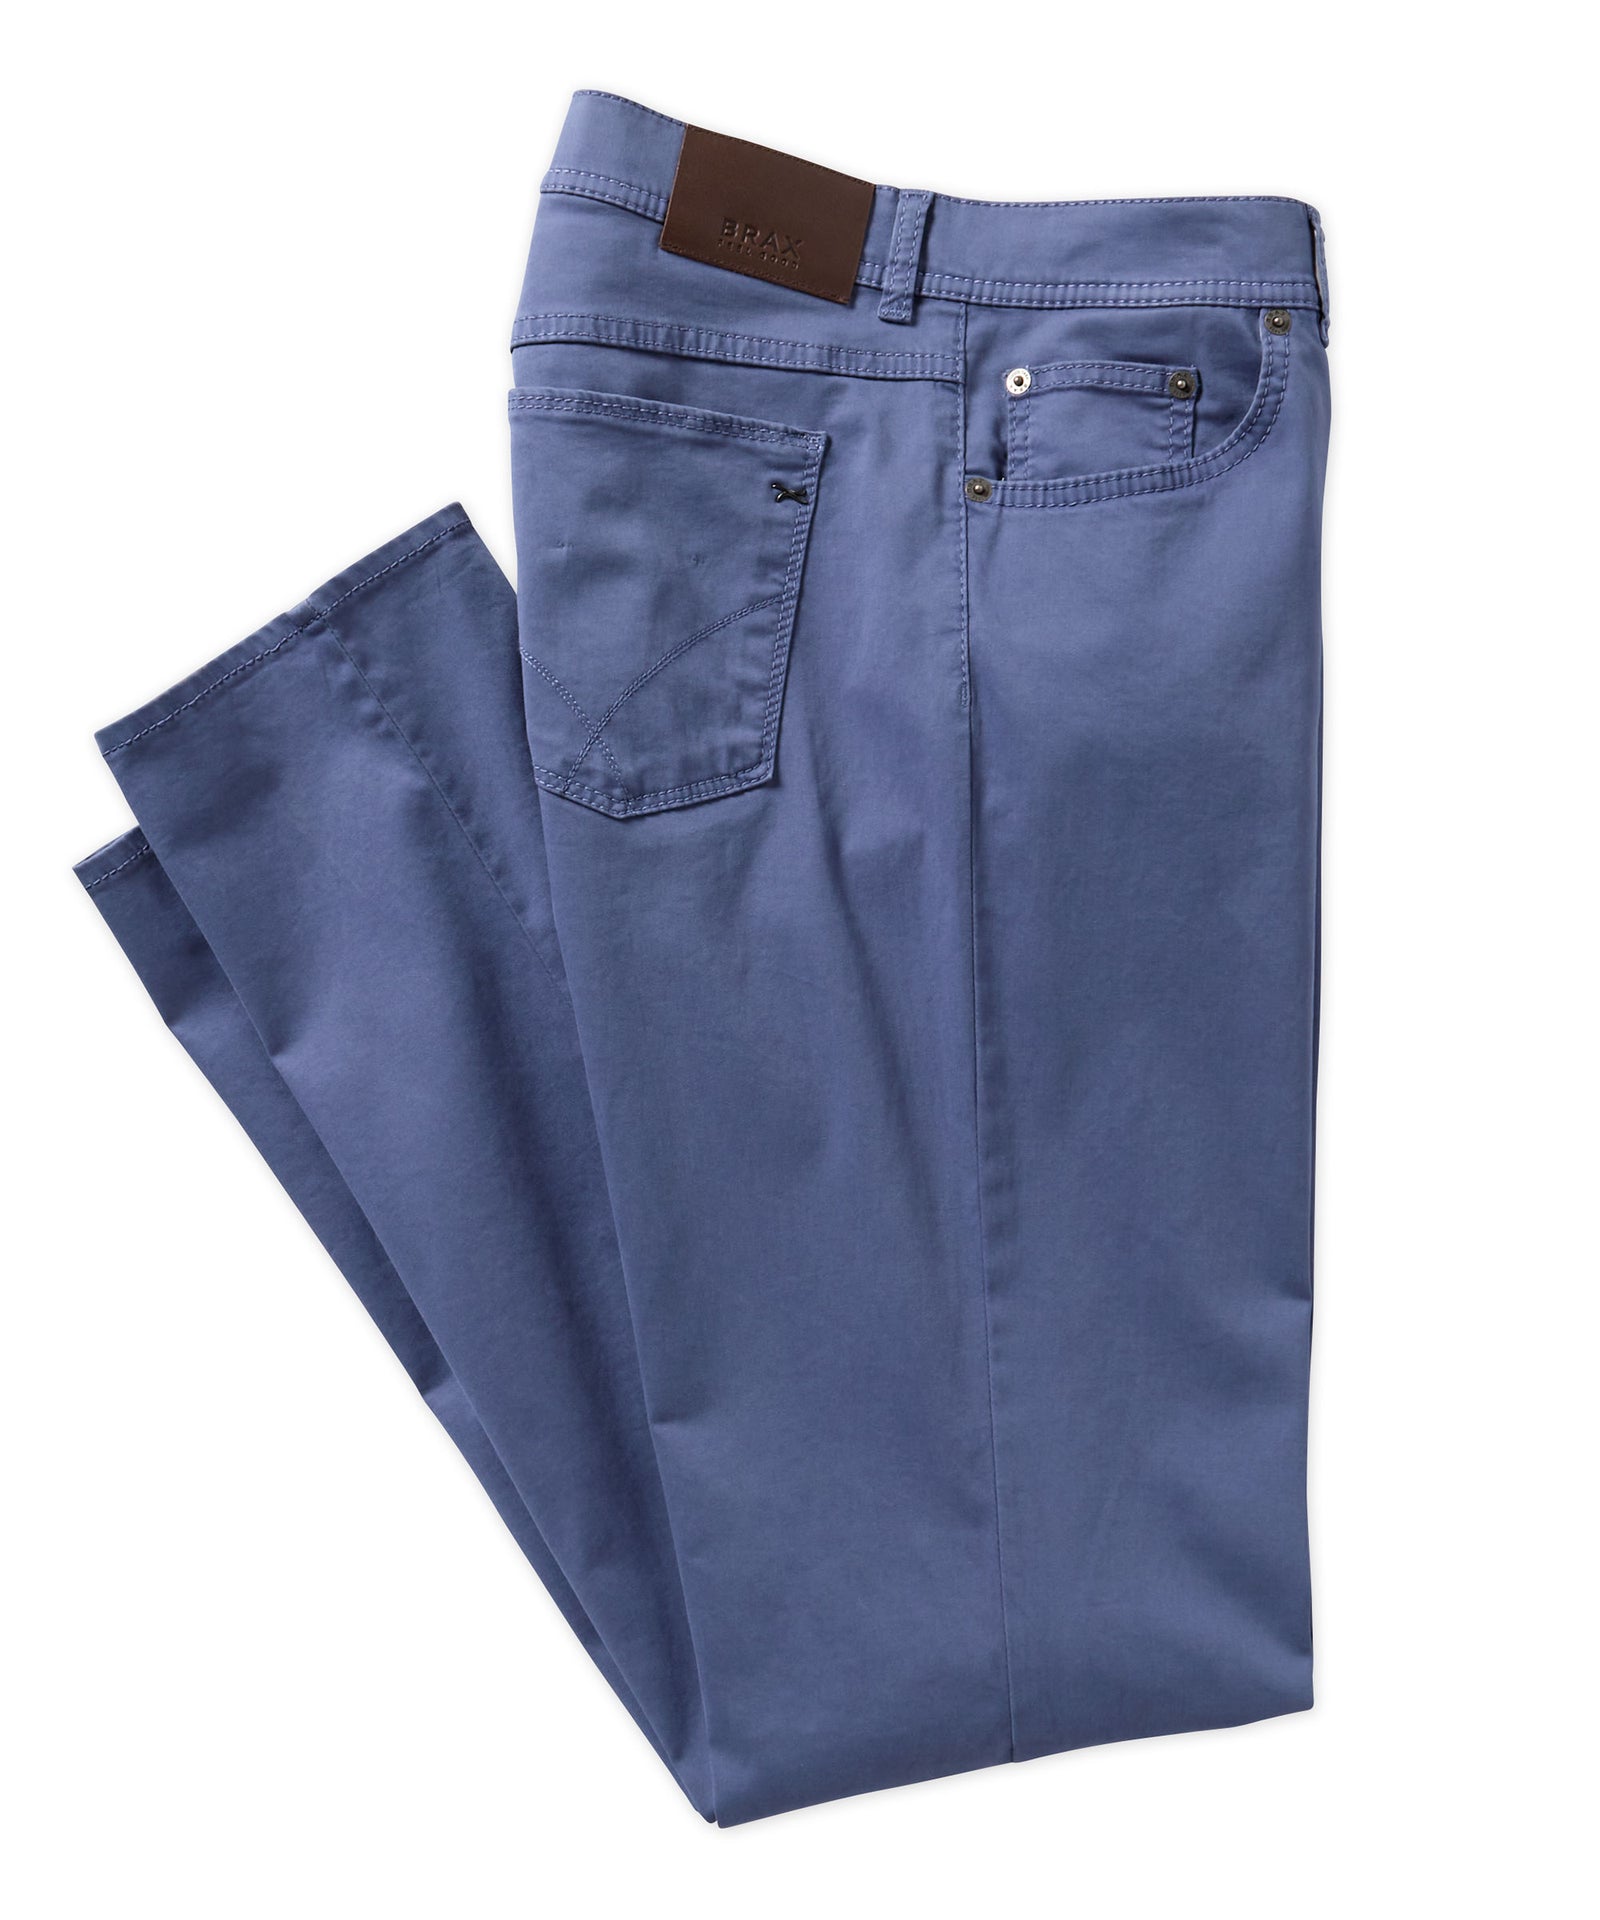 Denim Plus Size Pants, Five-pocket Men's Jeans, Slim Fit Jeans